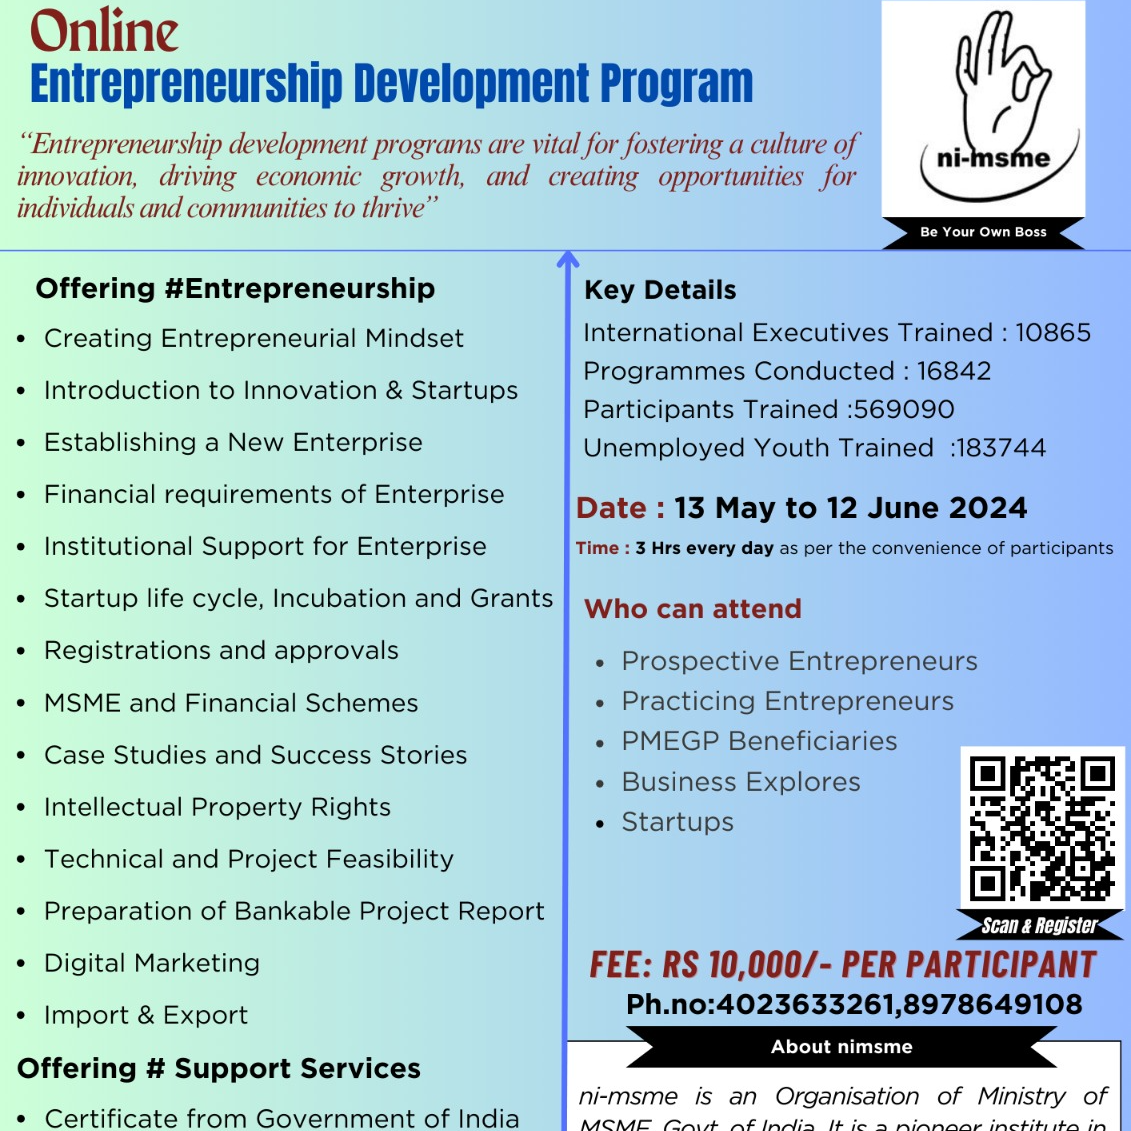 Online Entrepreneurship Development Programme 